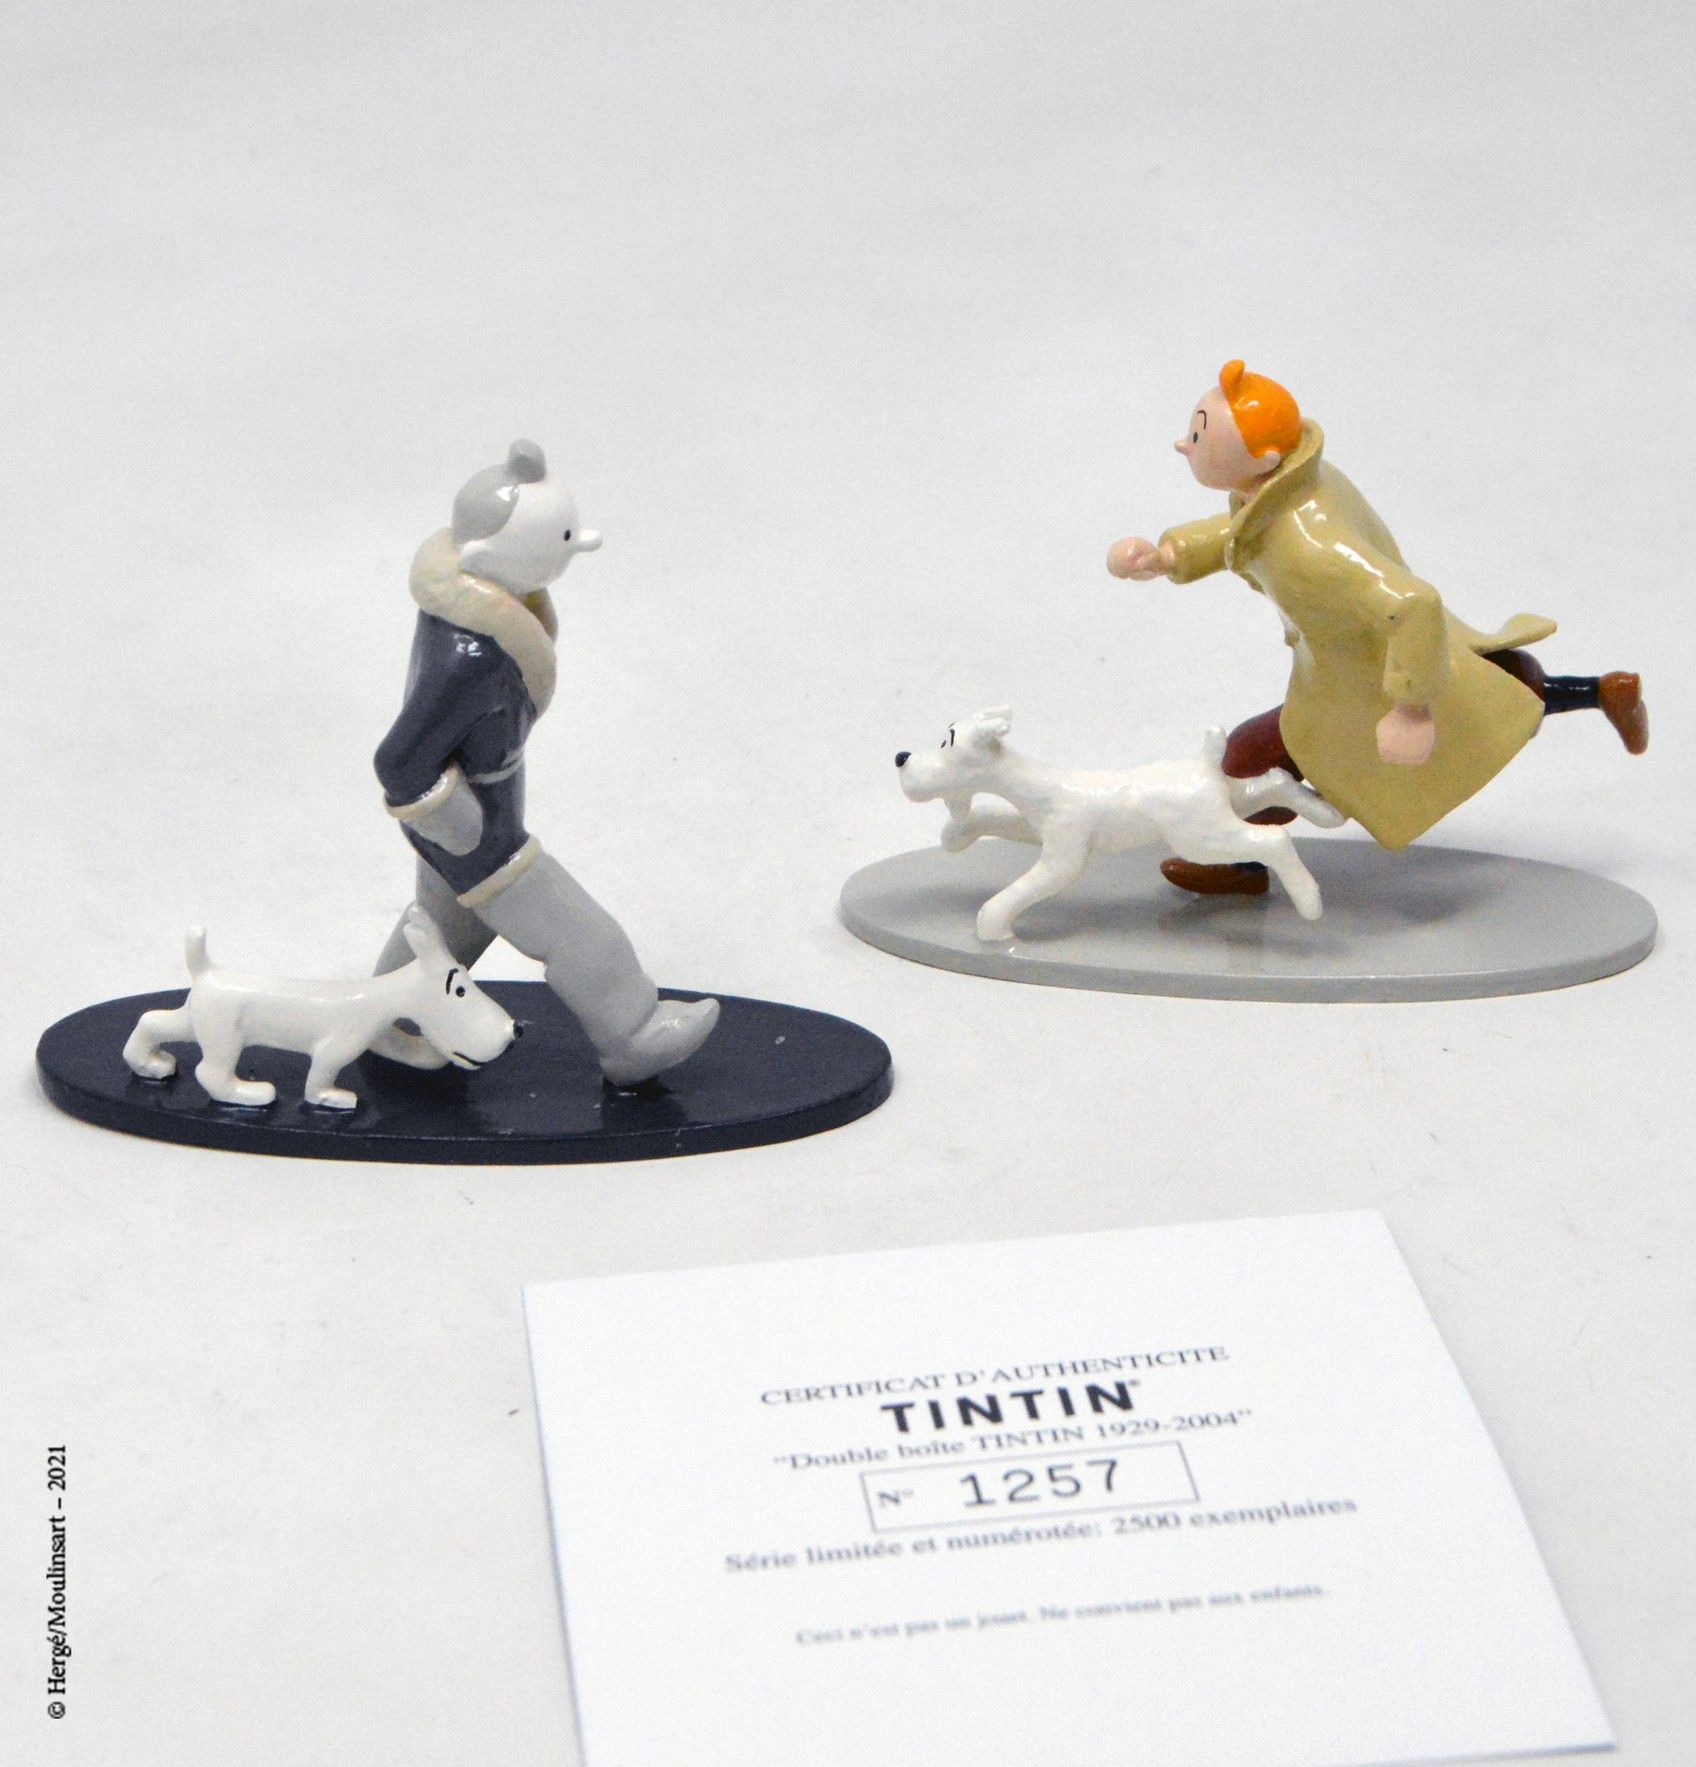 TINTIN Hergé/moulinsart

Hergé :穆林萨特铅/经典系列

双层盒装丁丁1929/2004（两个人物）。

编号：46207

带着&hellip;